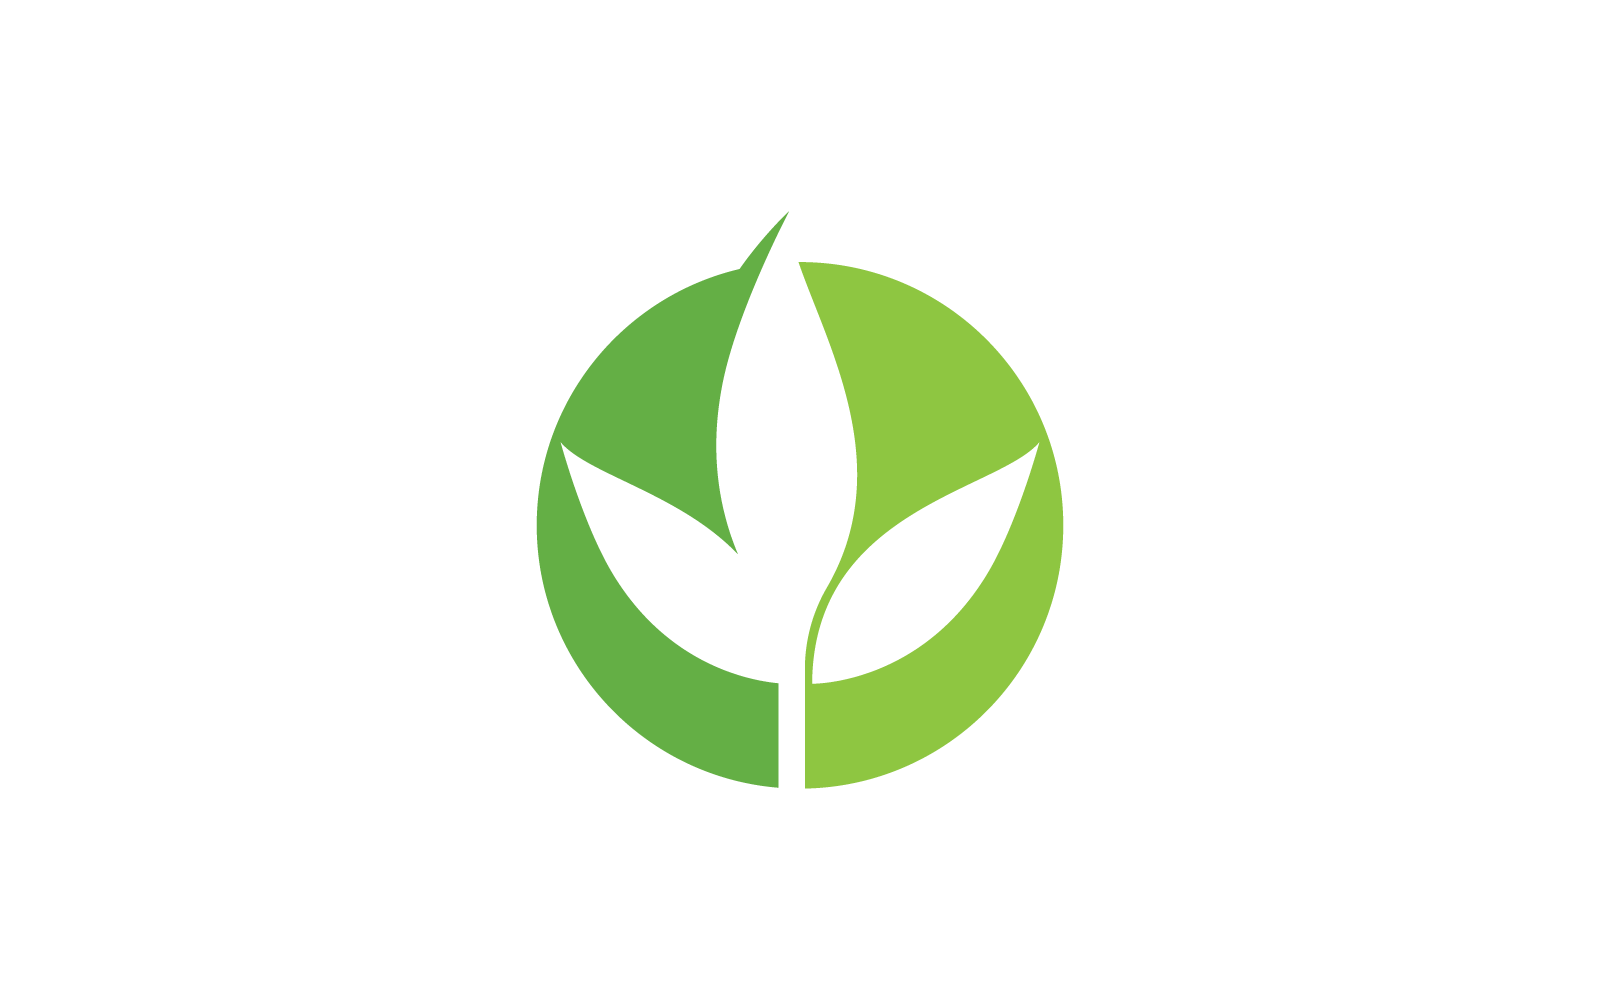 Eco green leaf illustration logo flat design